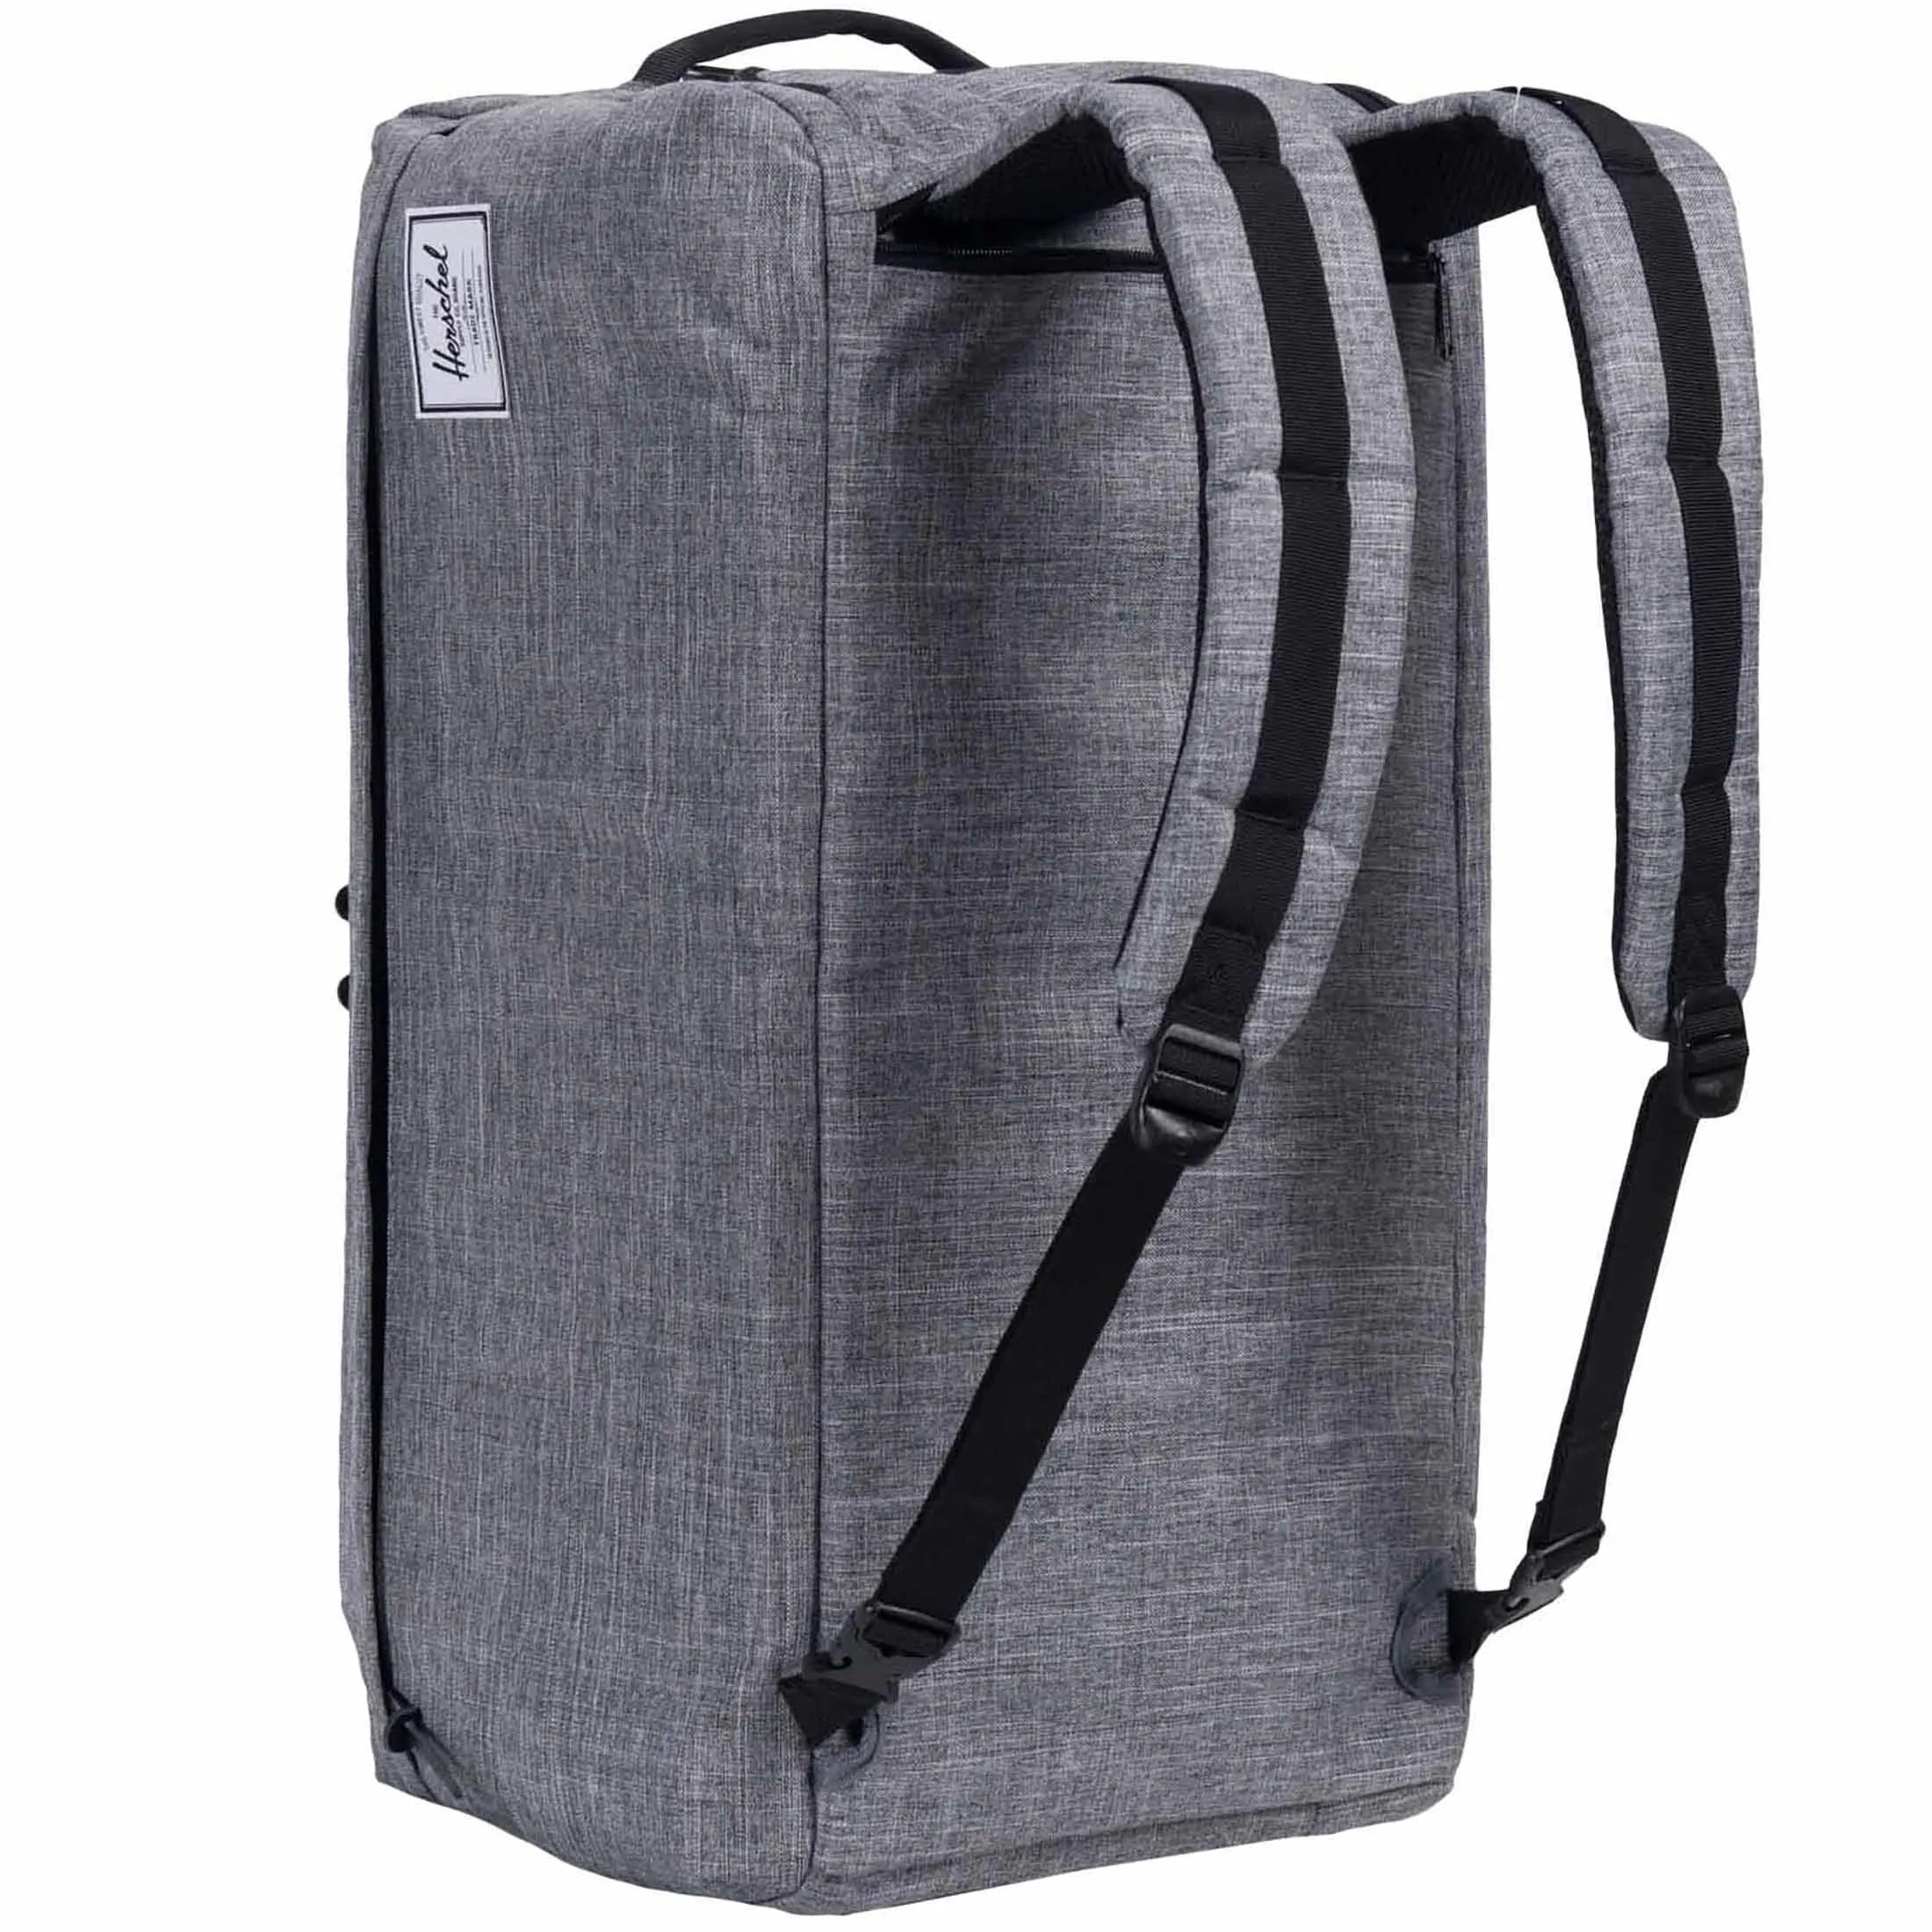 Herschel Travel Collection Outfitter Travel sac de voyage 61 cm - paume noire